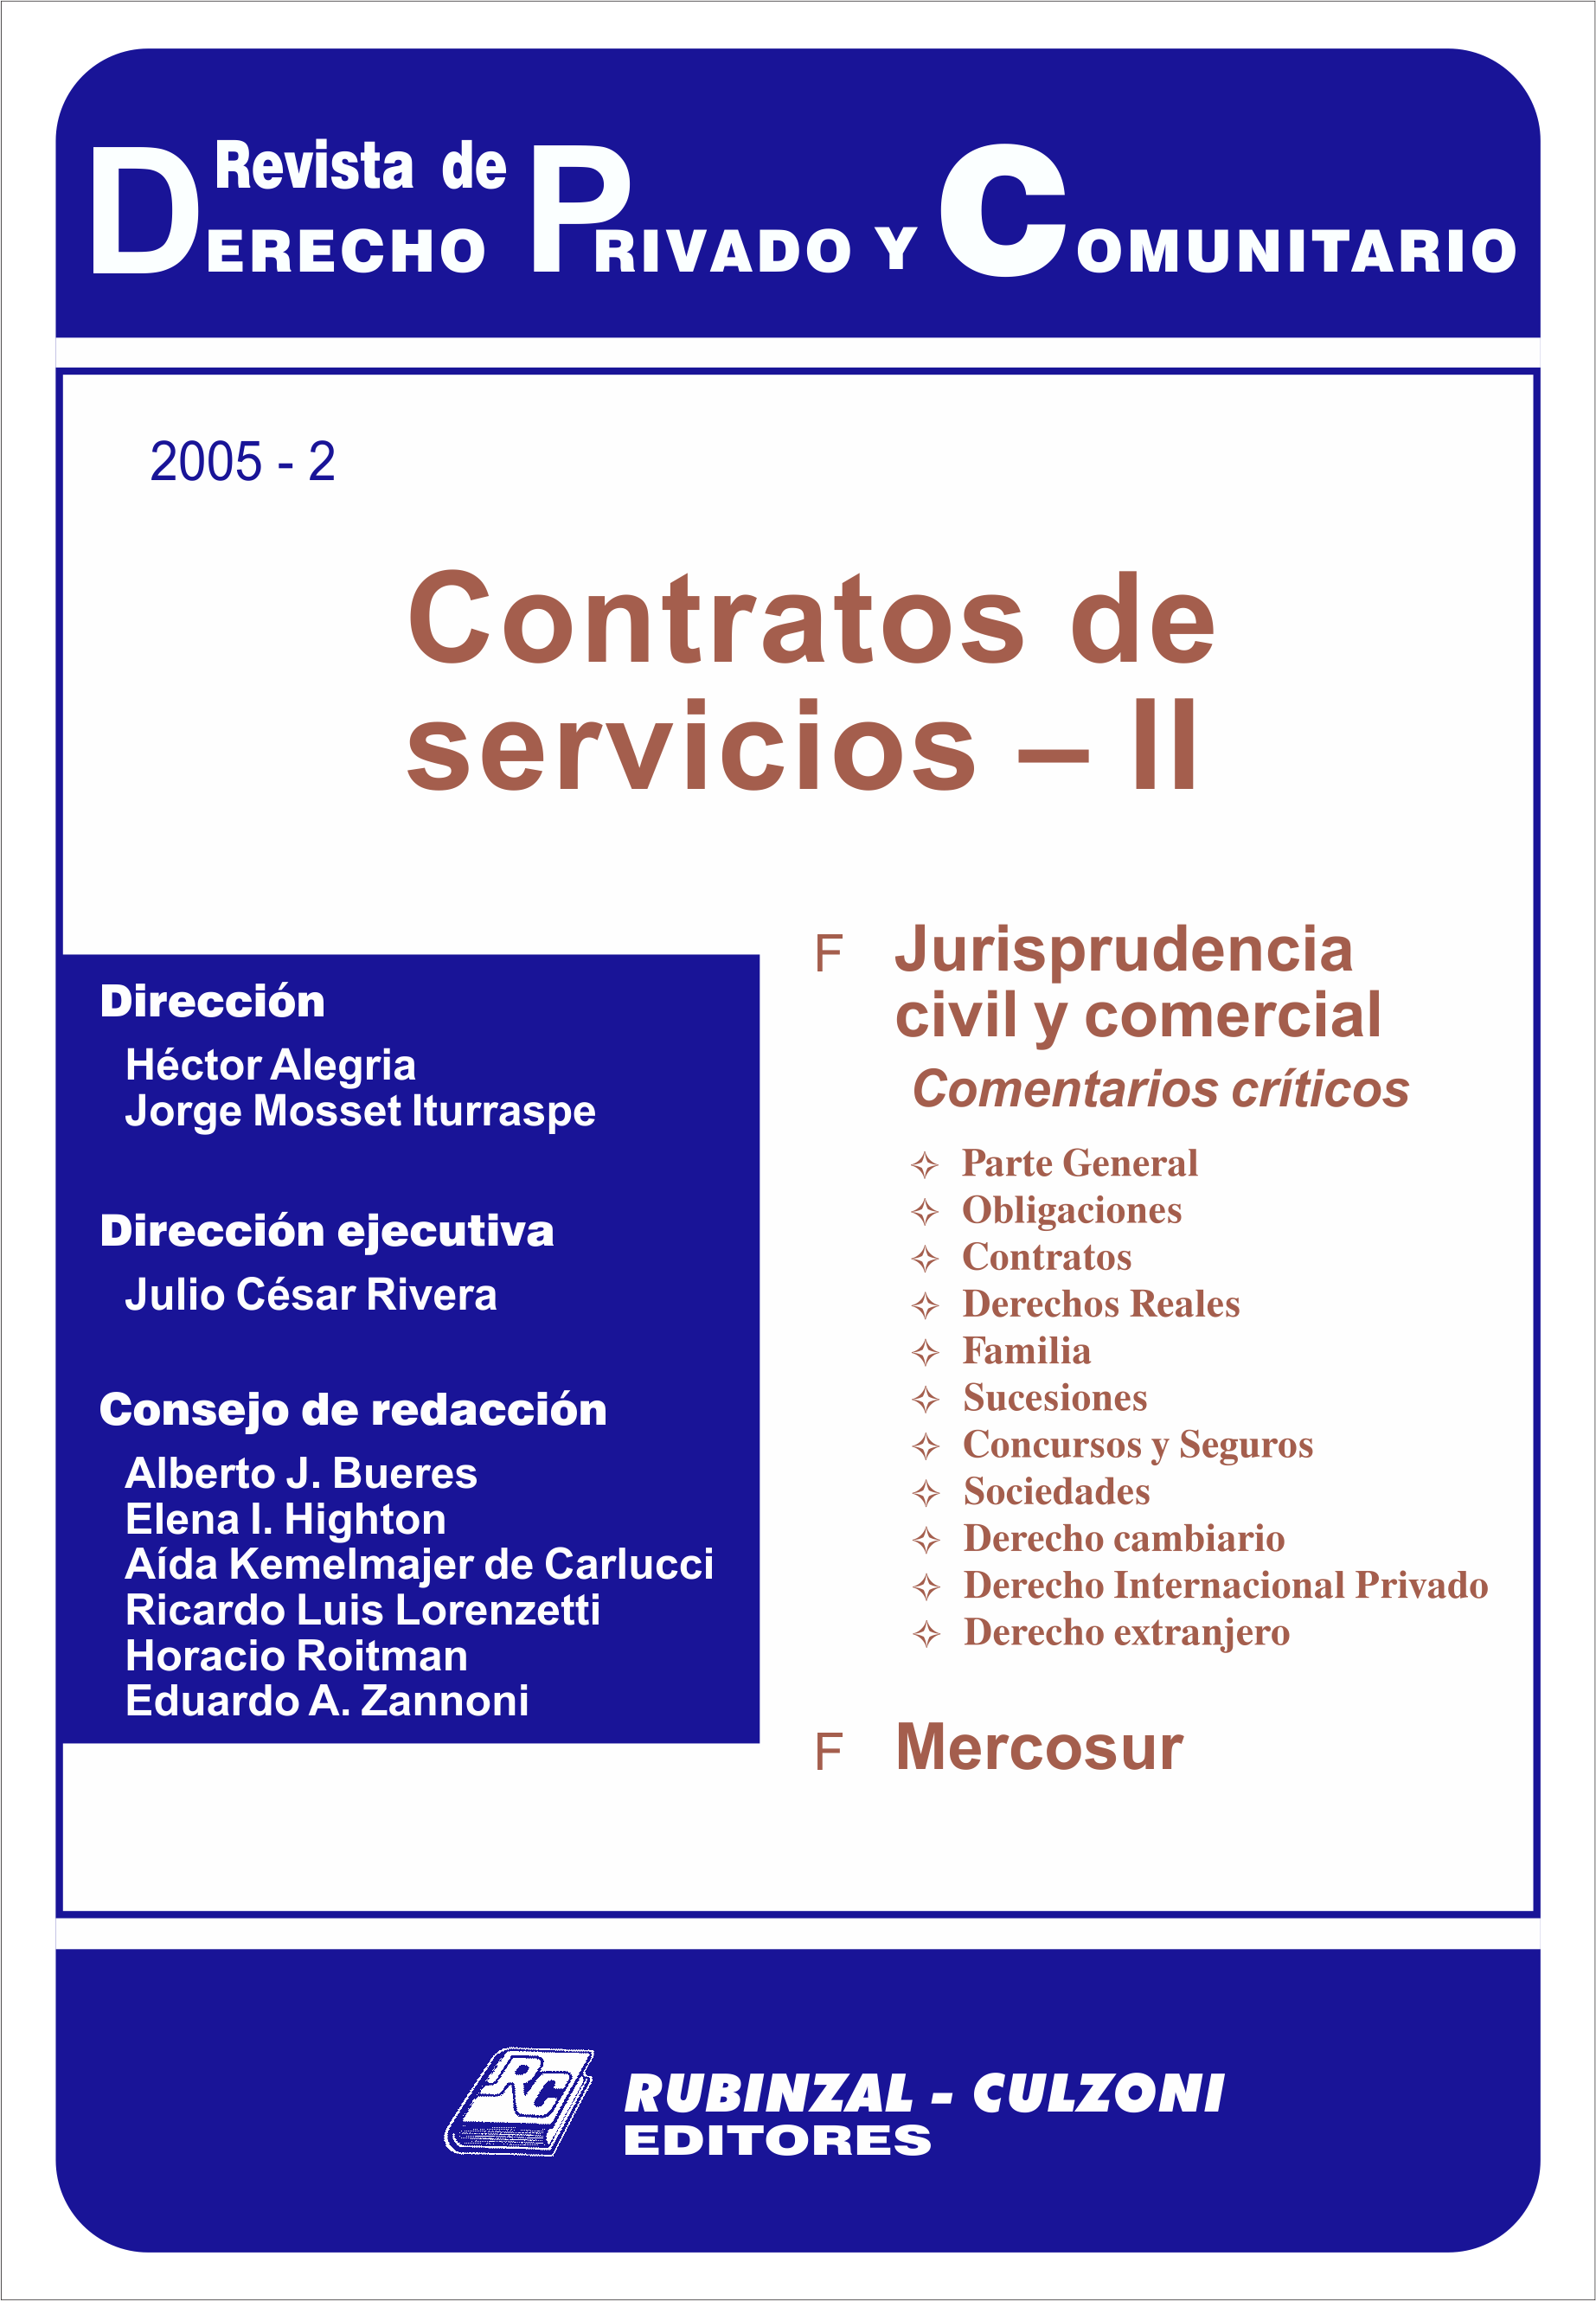 Revista de Derecho Privado y Comunitario - Contratos de servicios - II.